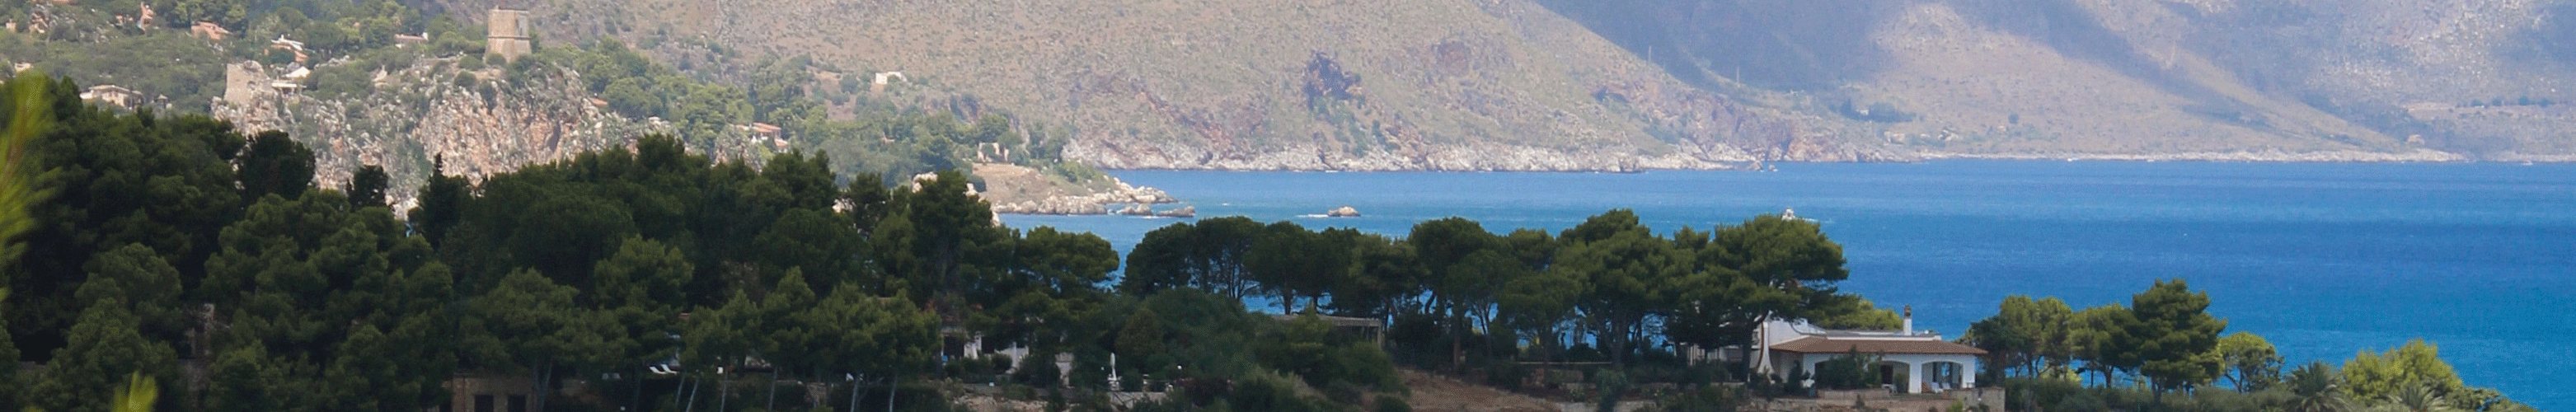 Panorama der Adriaküste